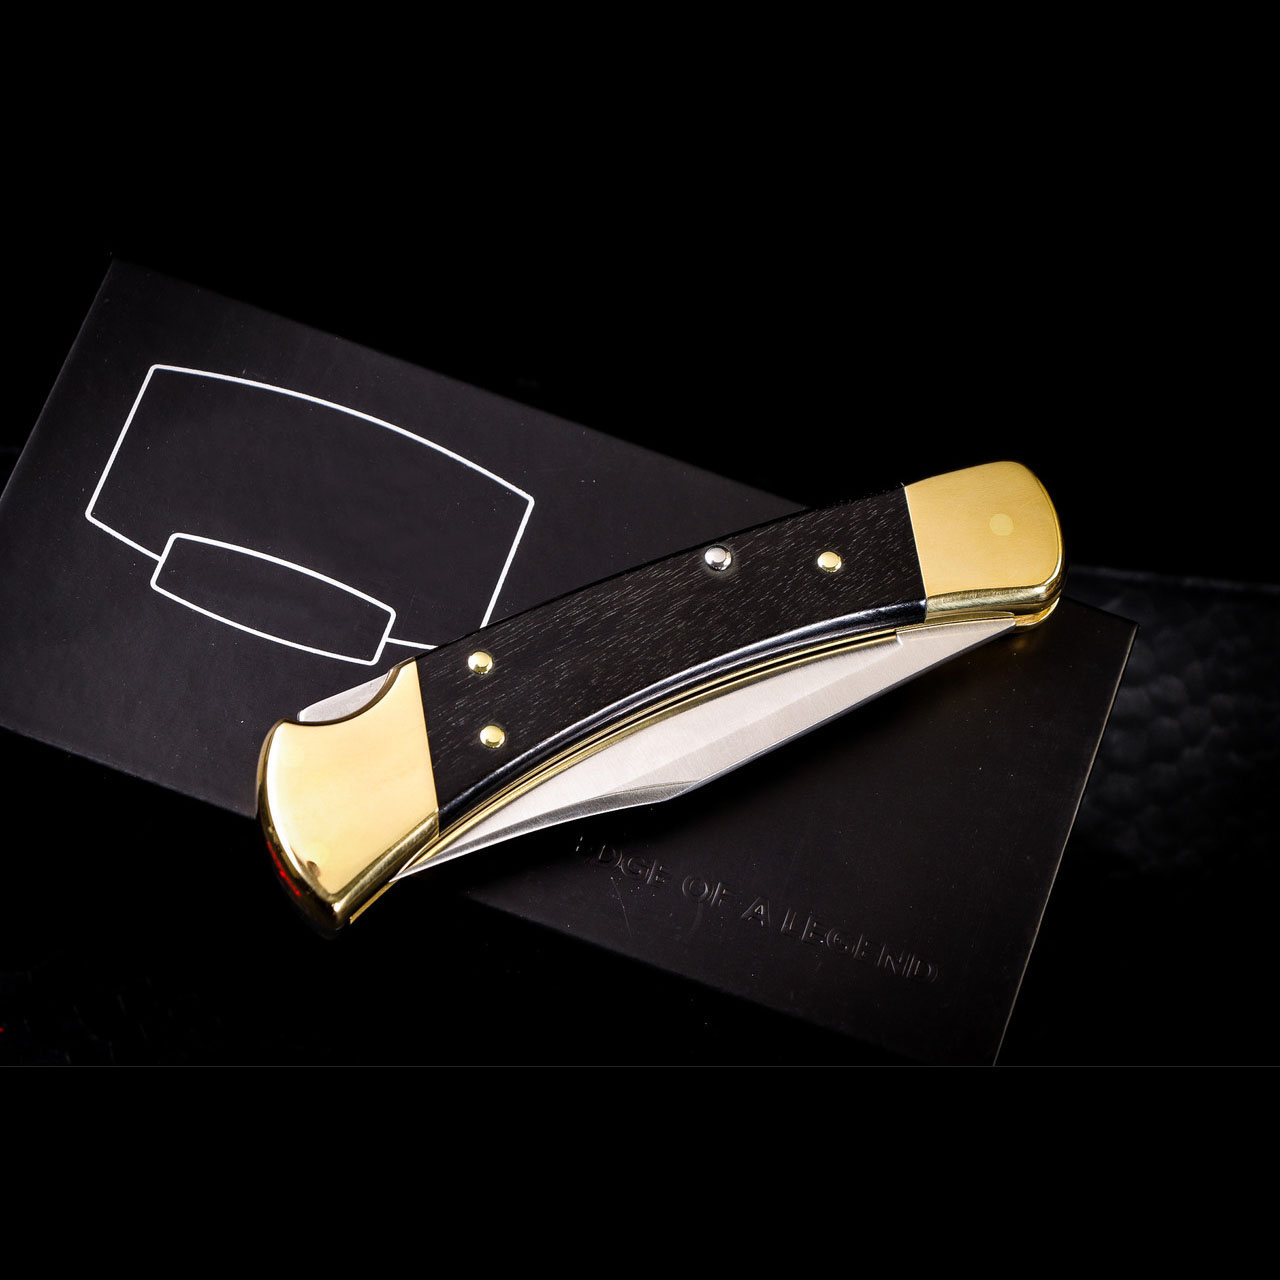 🔥Last Day Promotion- SAVE 70%🎄BK-110 Auto Folding Hunter Knife